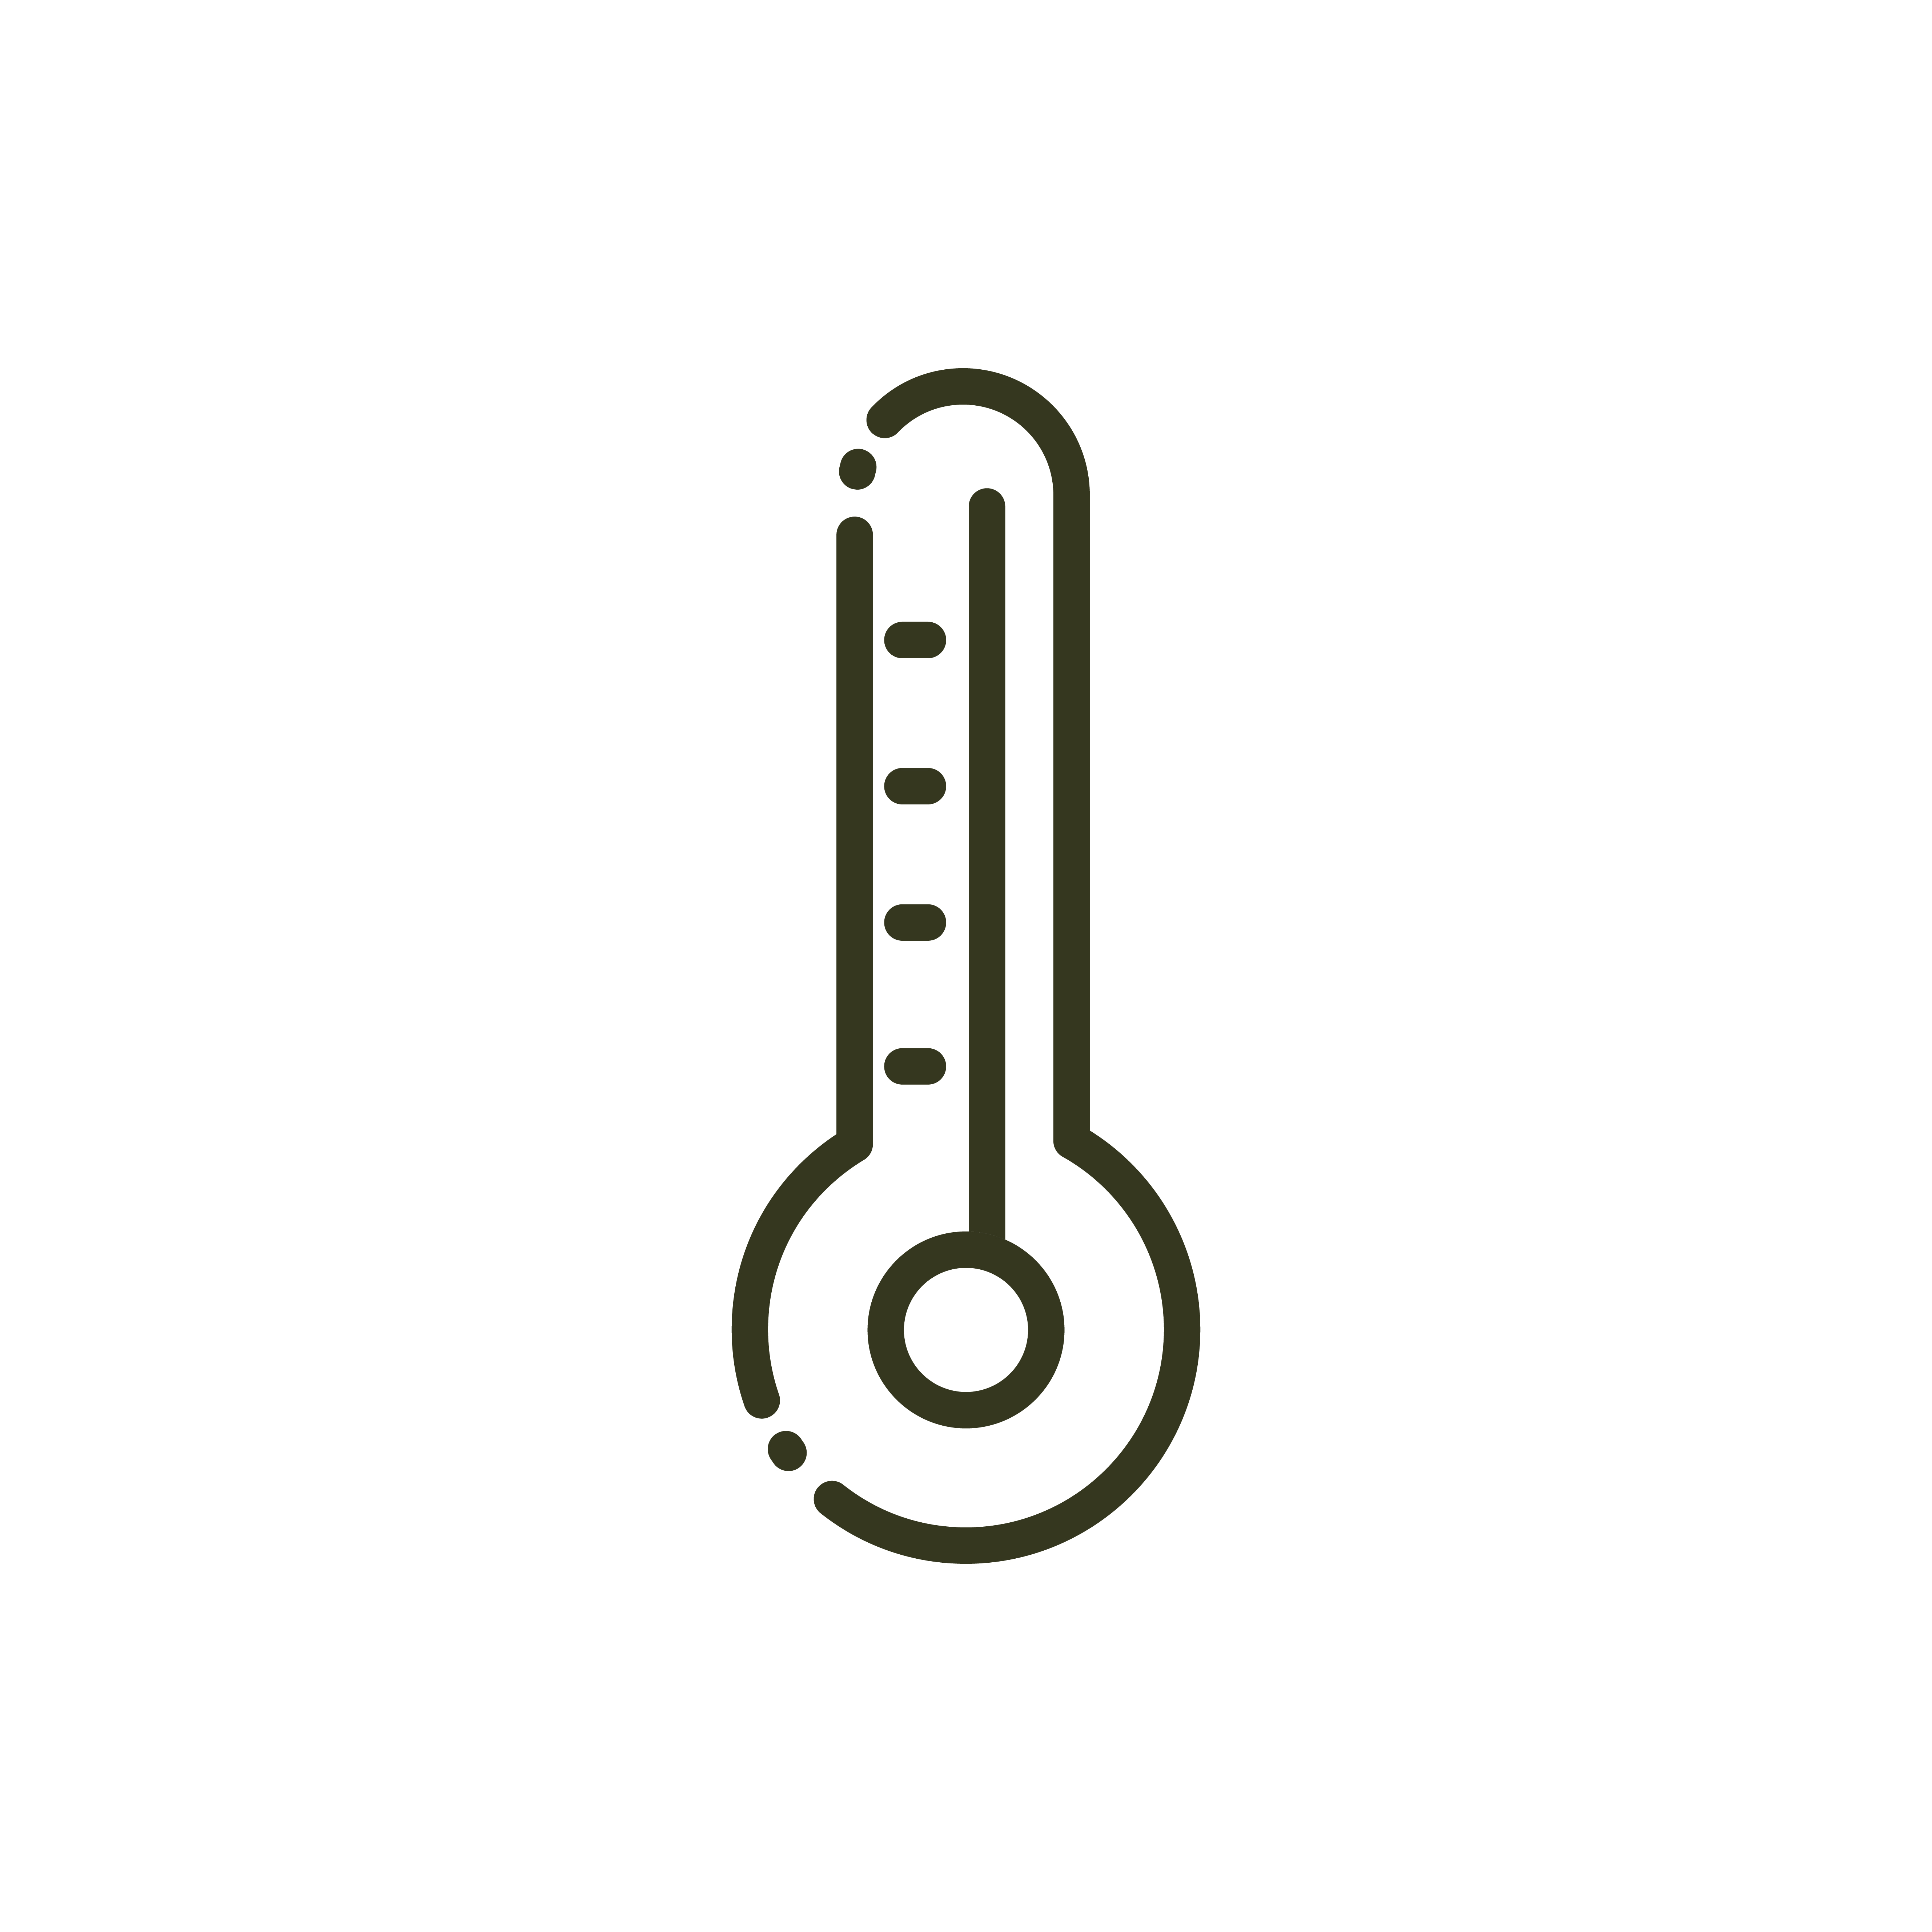 ingewikkeld Ontwaken van thermometer temperature hot or cold nature line design 2521432 Vector Art  at Vecteezy